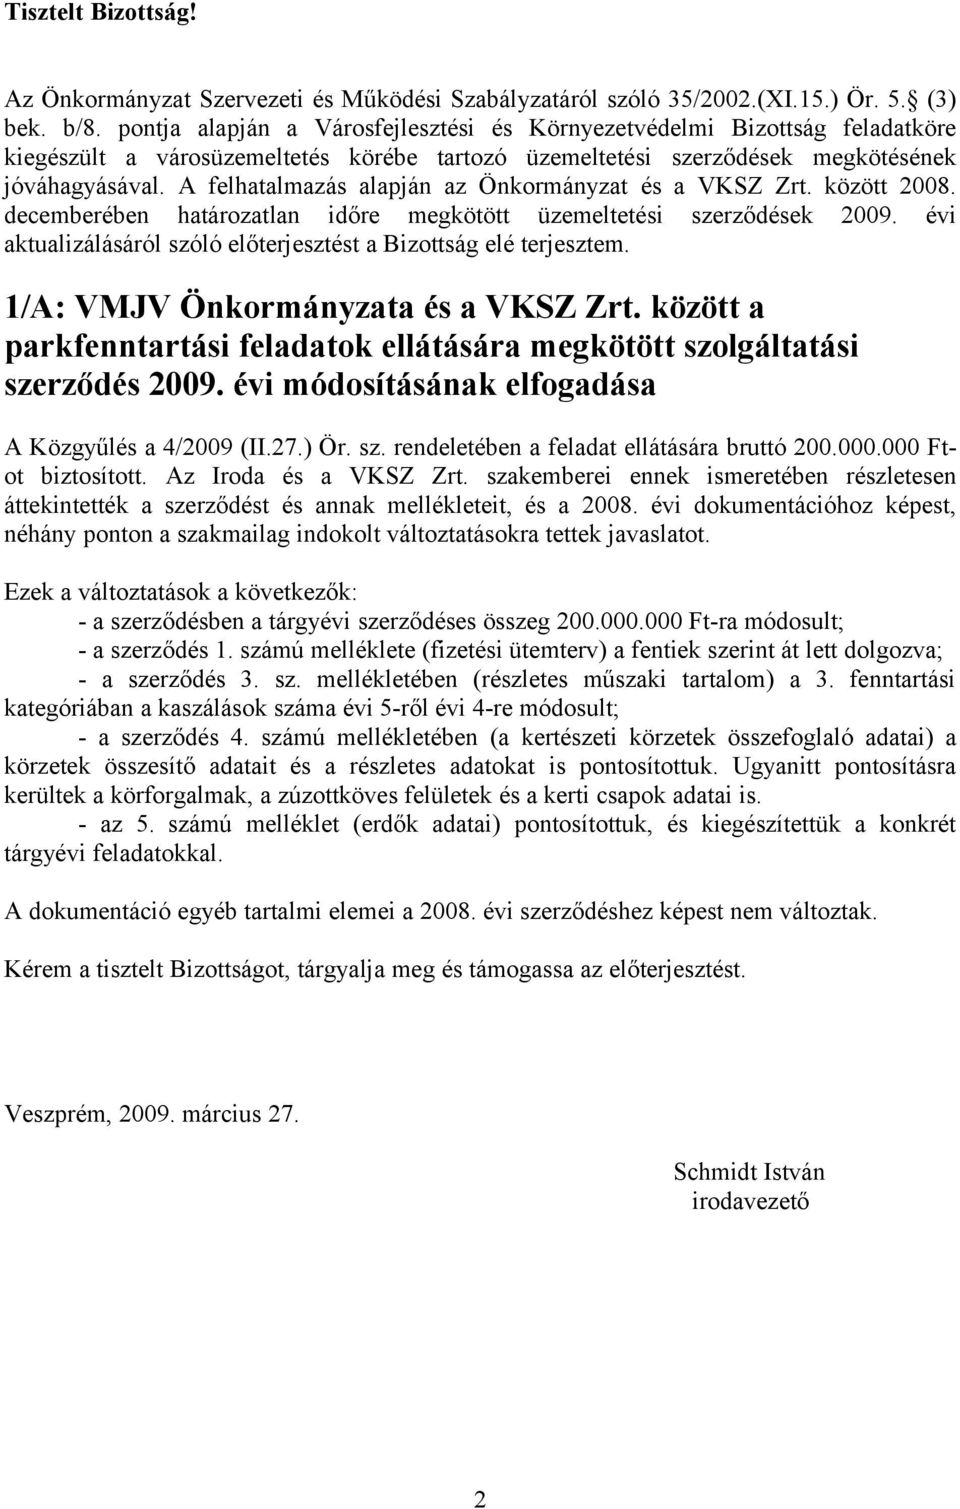 A felhatalmazás alapján az Önkormányzat és a VKSZ Zrt. között 2008. decemberében határozatlan időre megkötött üzemeltetési szerződések 2009.